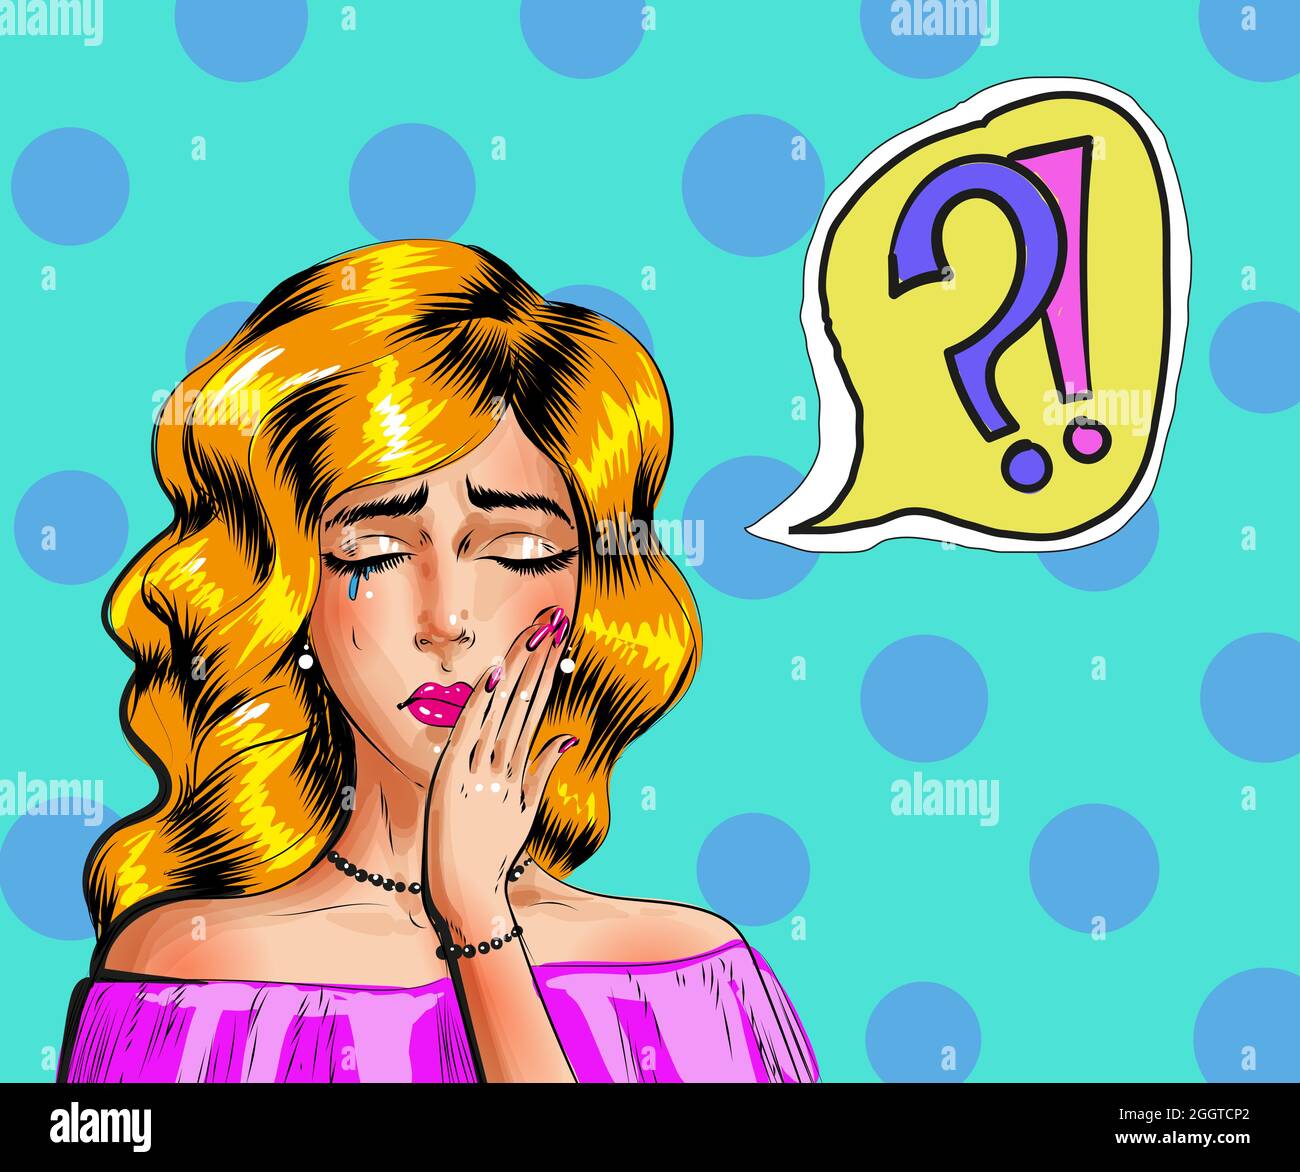 Trauriges Retro-Mädchen. Vintage weinende Popart Frau mit omg und hoppla  Comic Zeichen Vektor-Illustration Stock-Vektorgrafik - Alamy